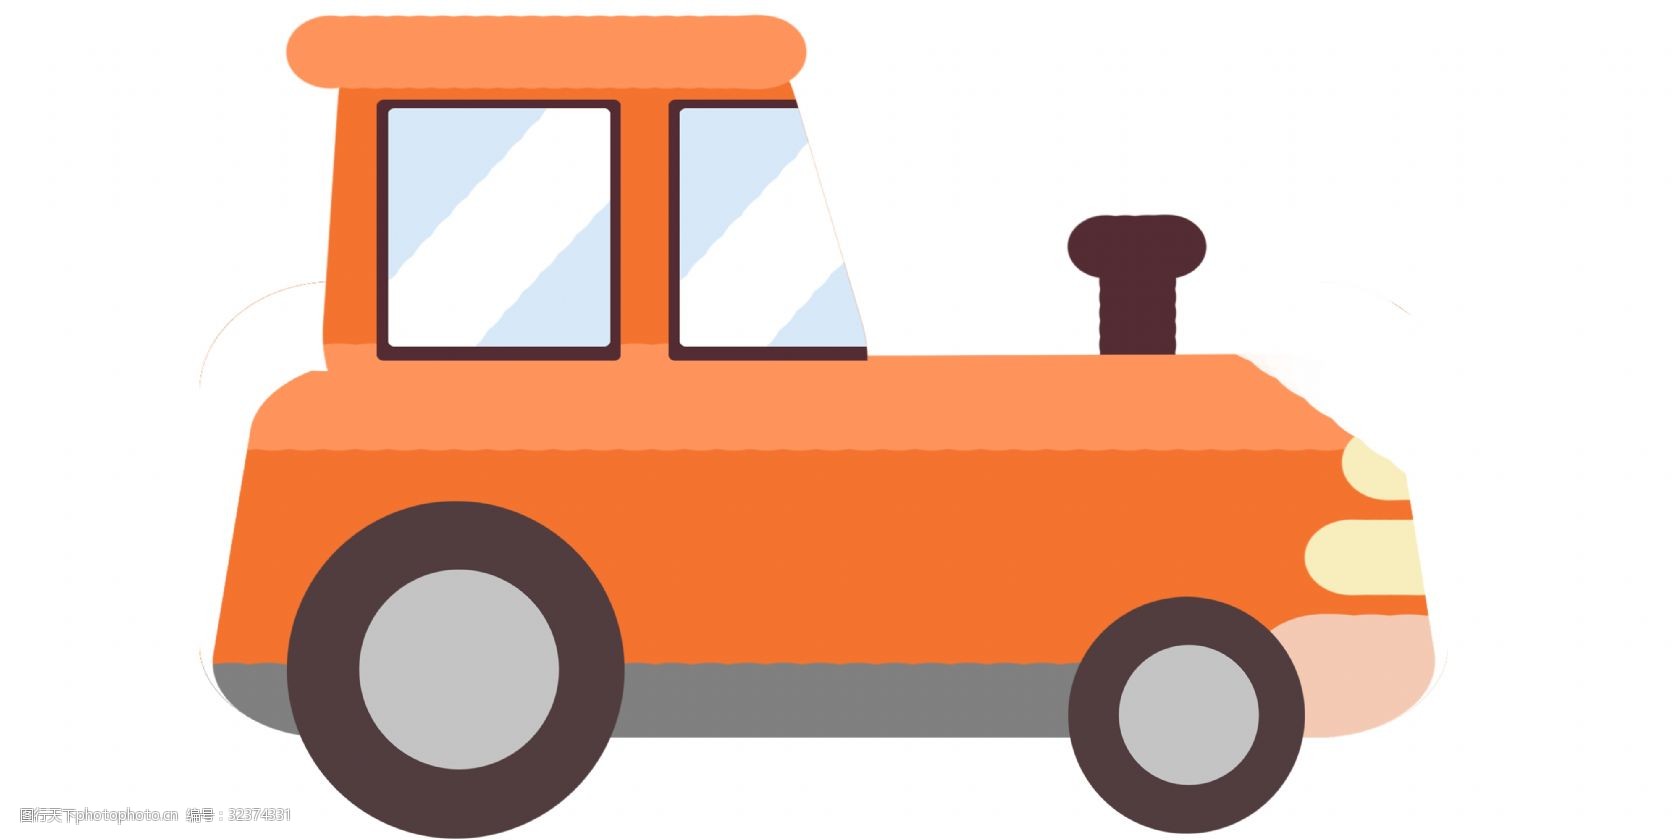 关键词:卡通橙色拖拉机插画 拖拉机 卡通拖拉机 插图 交通 机动车